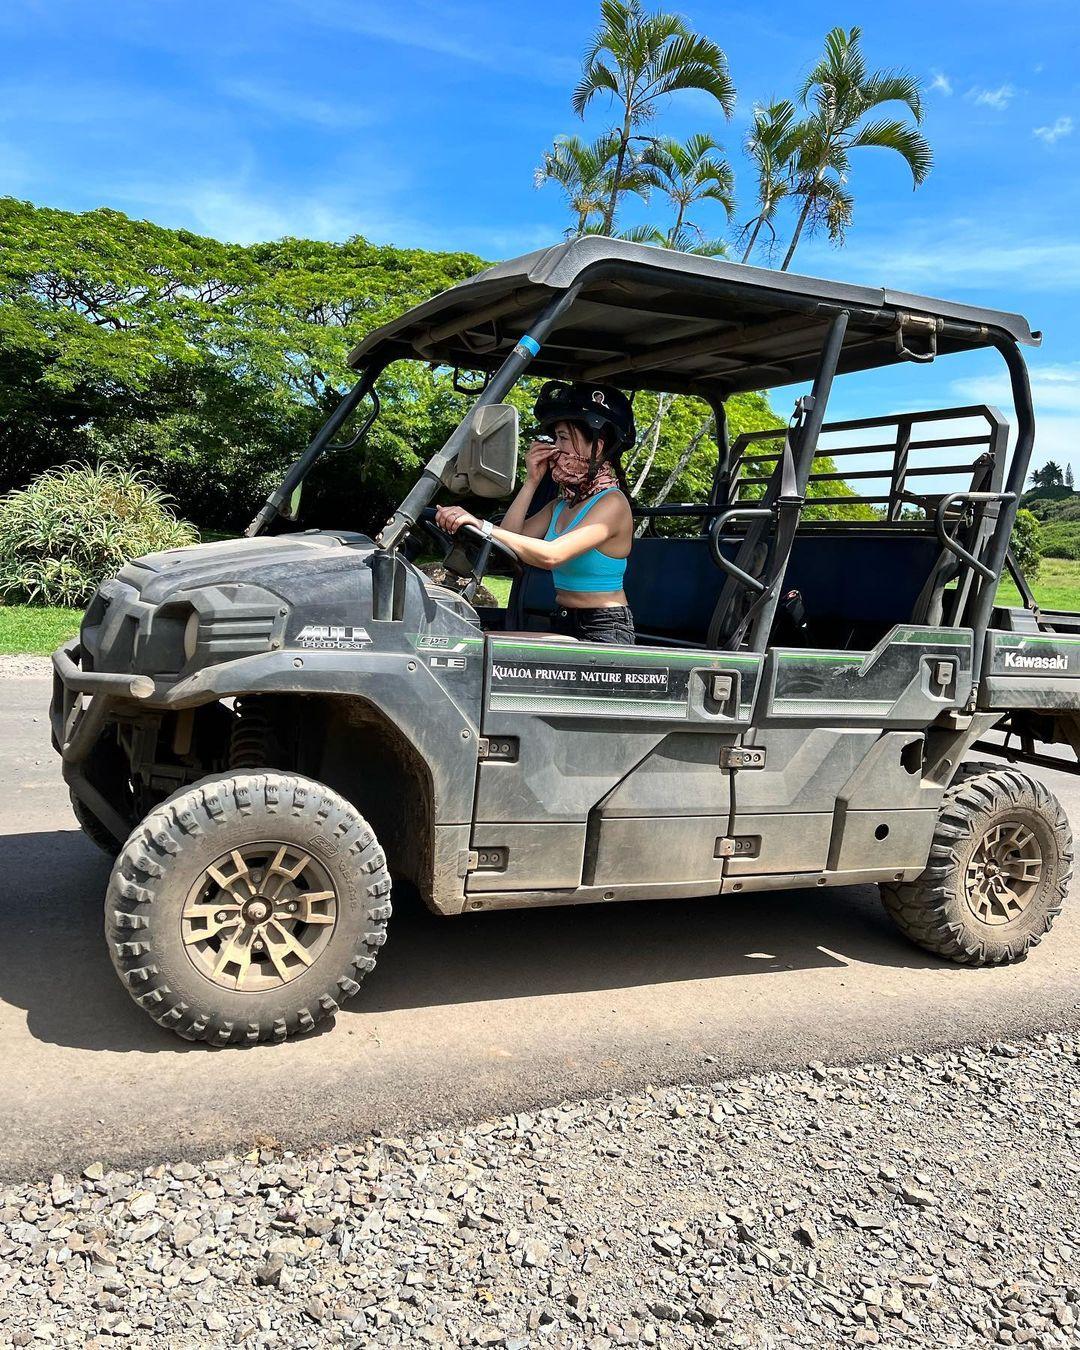 class="content__text"
 UTV tour in Hawaii #jurasaicpark #kualoaranch 🌺 
 